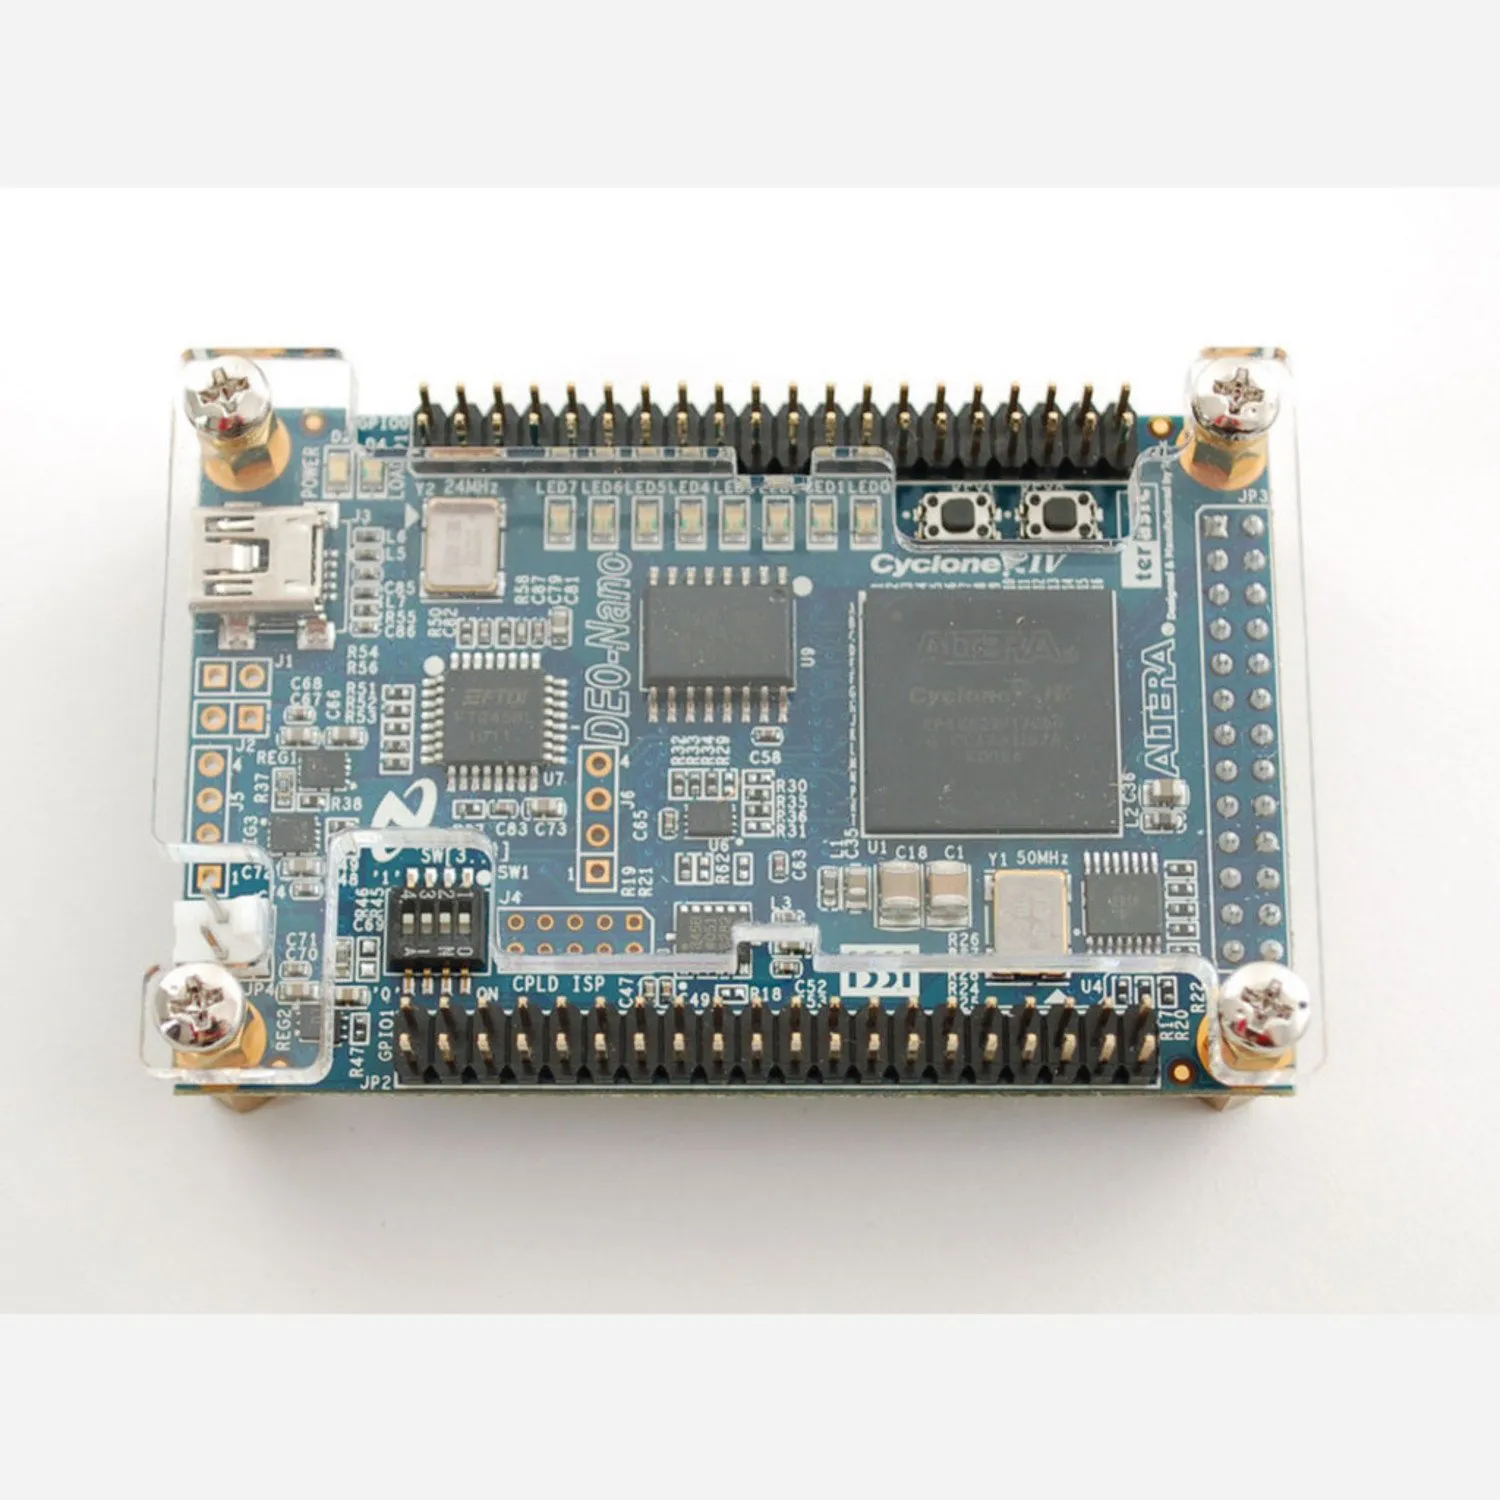 Photo of DE0-Nano - Altera Cyclone IV FPGA starter board